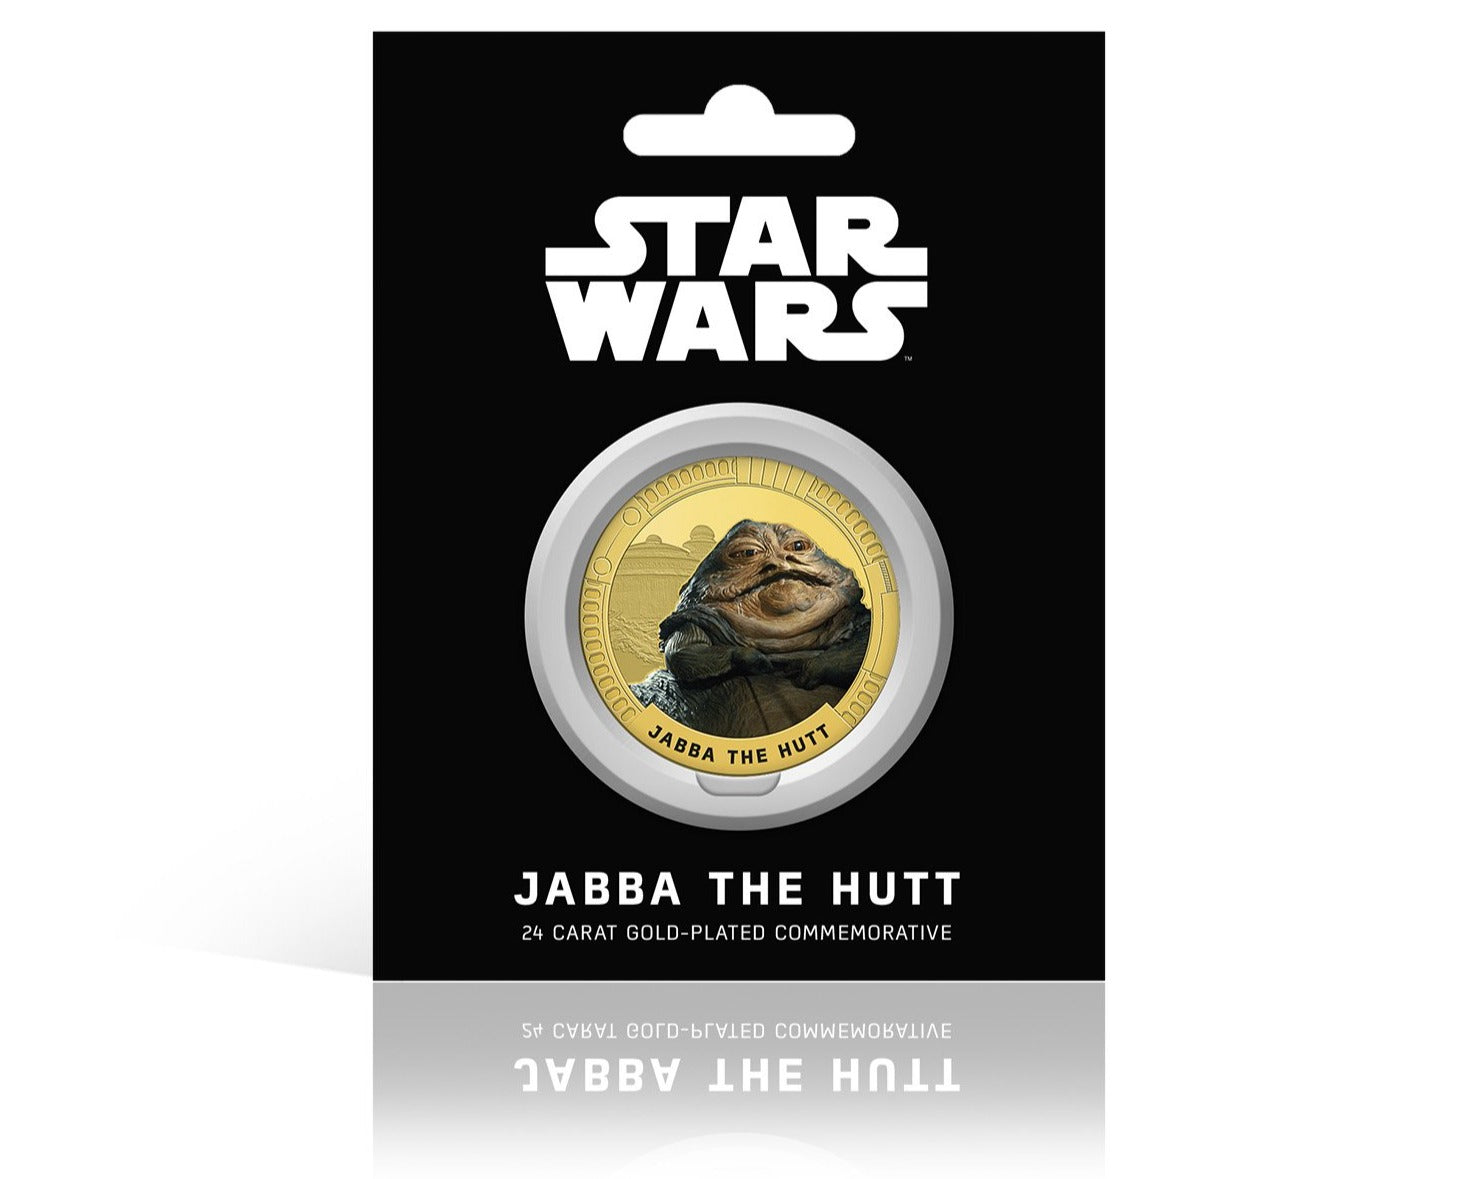 Star Wars Trilogía Original Episodios IV - VI - Jabba - Moneda / Medalla conmemorativa acuñada con baño en Oro 24 quilates y coloreada a 4 colores - 44mm